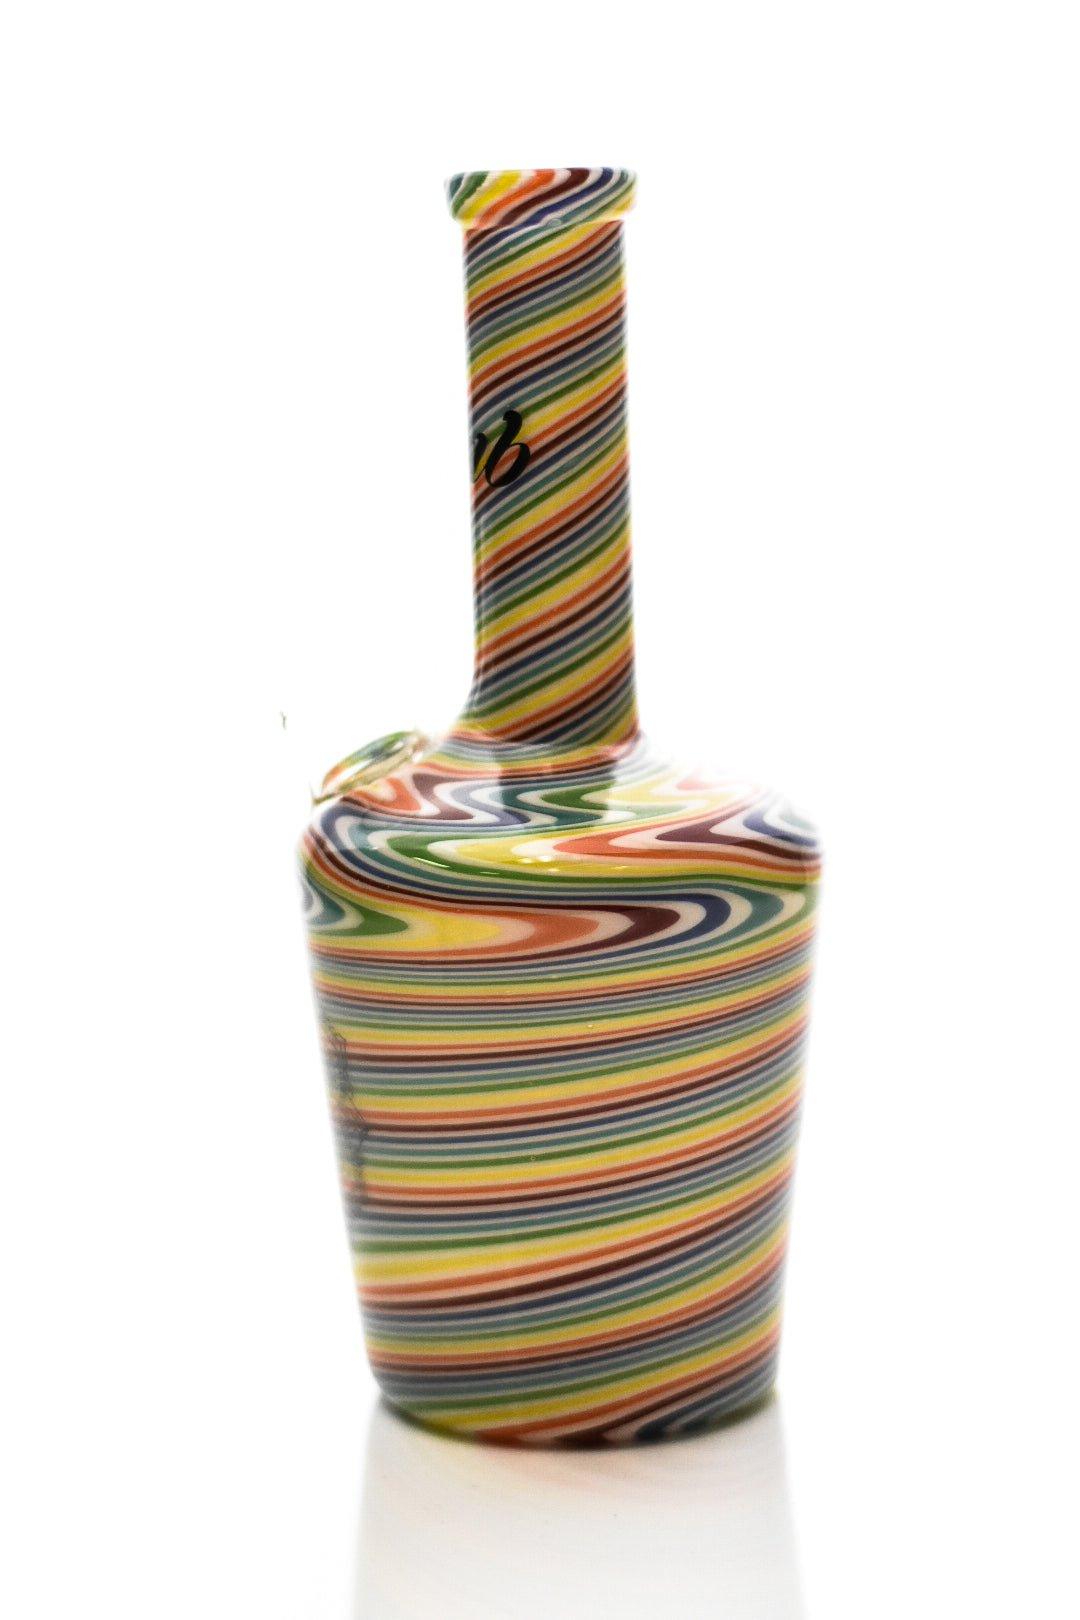 IDAB Rainbow Colored Rig - Smoke Spot Smoke Shop